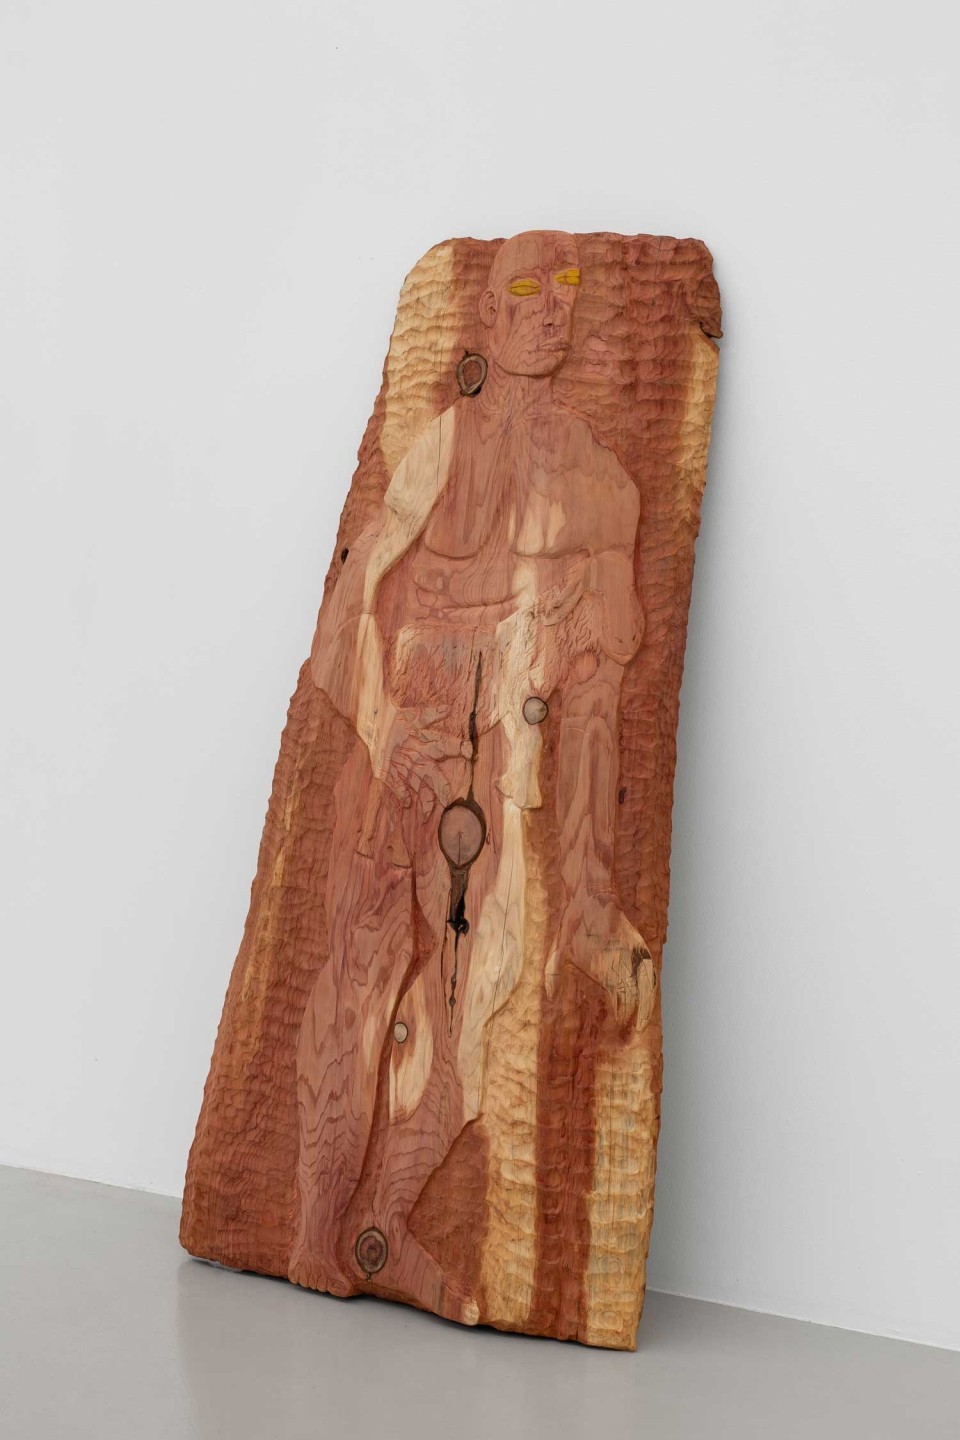 Bois de séquoia de 147 centimètres de haut pour 70 centimètres de large dans lequel est sculptée une figure masculine.